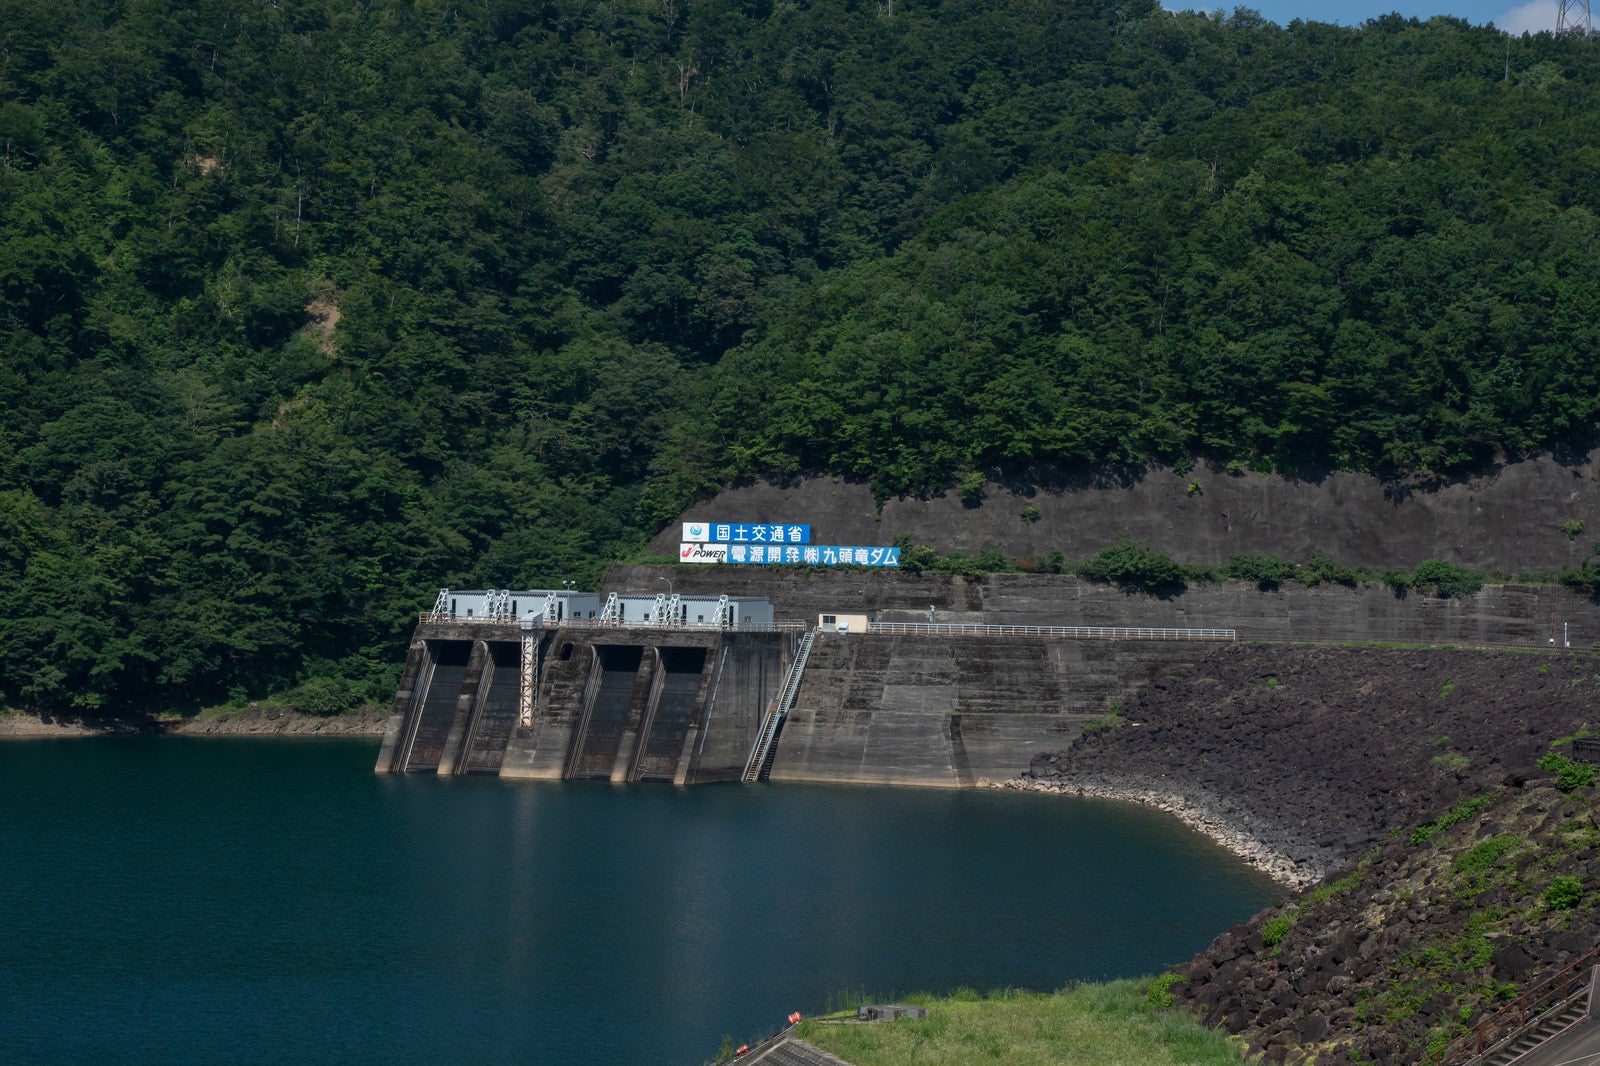 「山肌に掲げられた国土交通省とダム名の看板とその下に見える発電所取水口（福井県大野市）」の写真